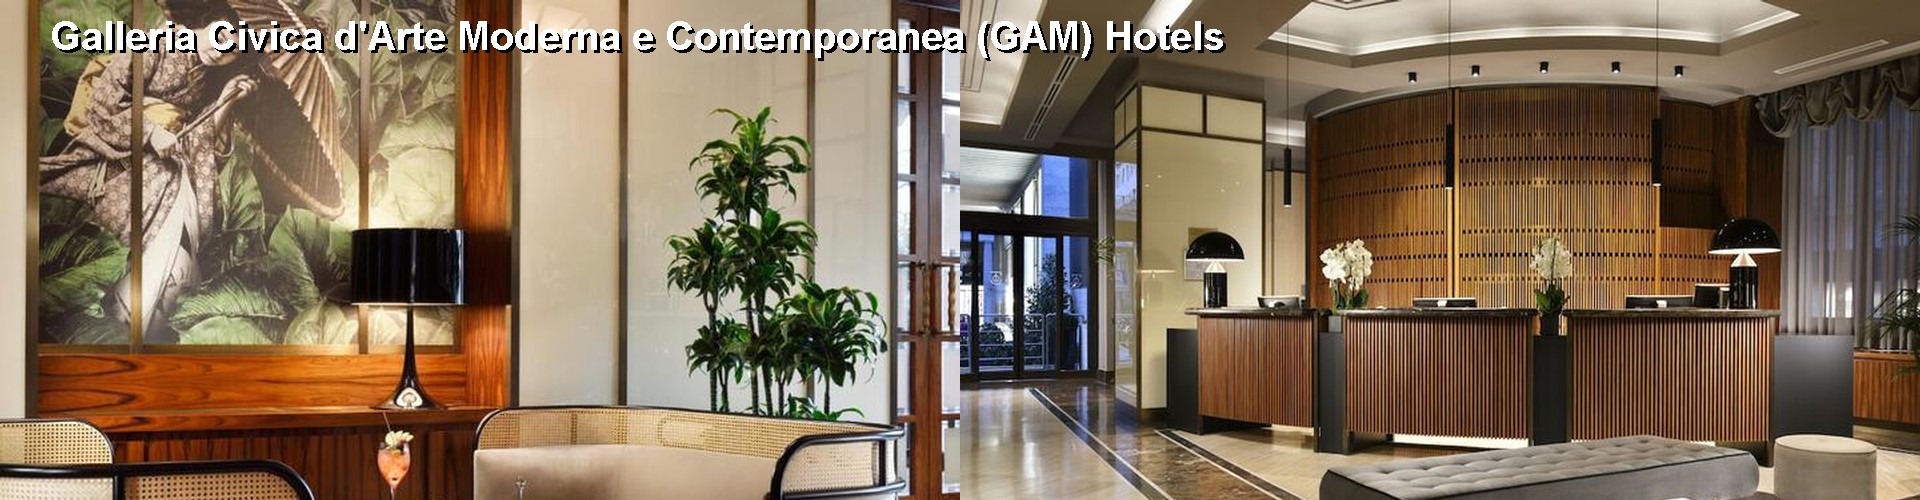 5 Best Hotels near Galleria Civica d'Arte Moderna e Contemporanea (GAM)